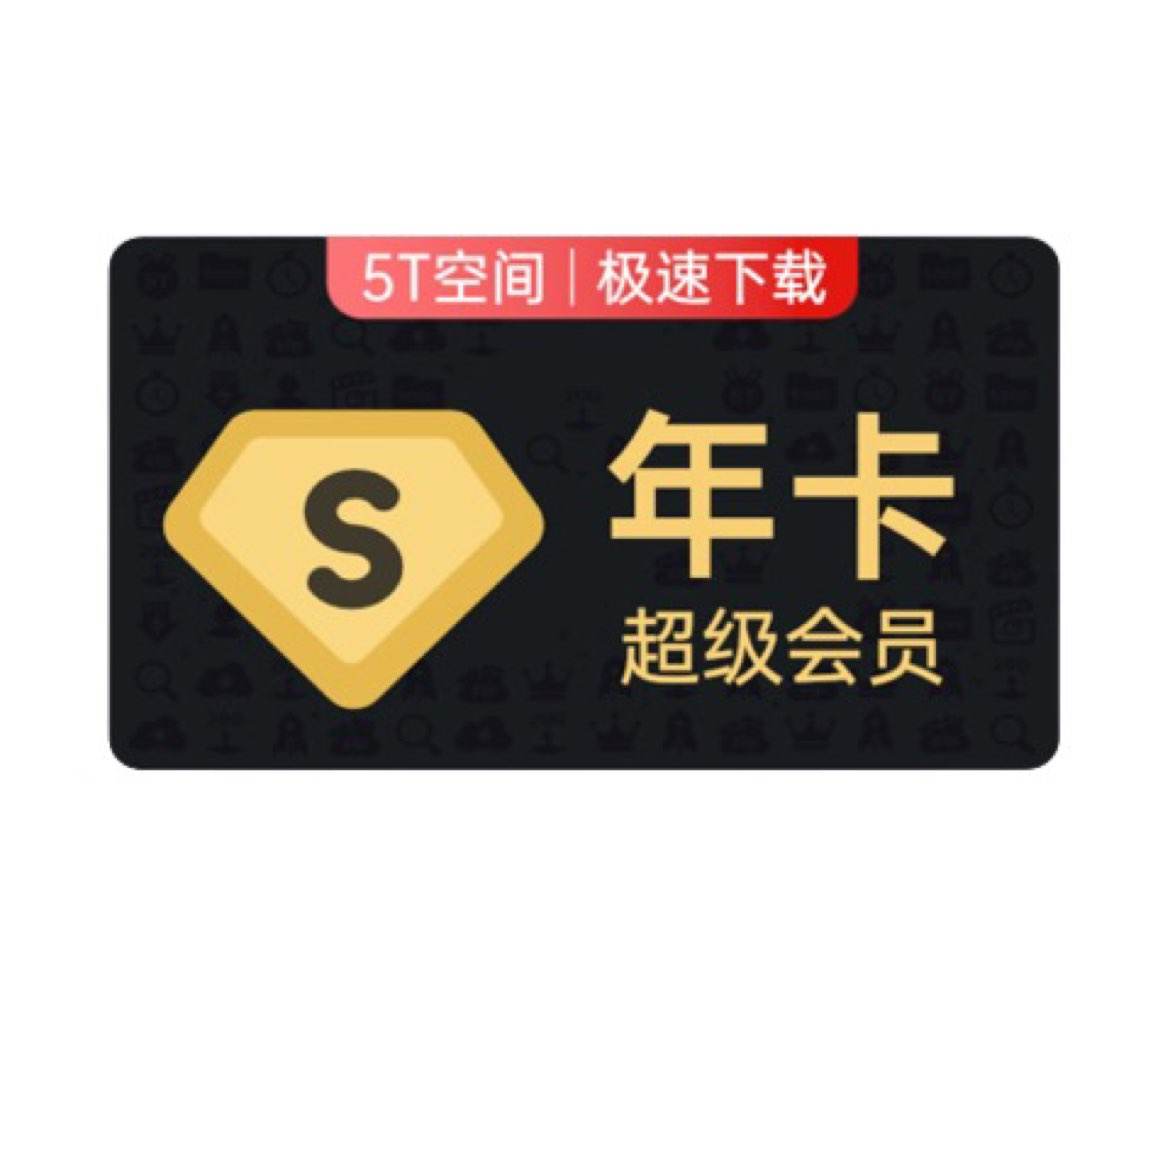 学生专享：Baidu 百度 网盘超级会员年卡 178元包邮